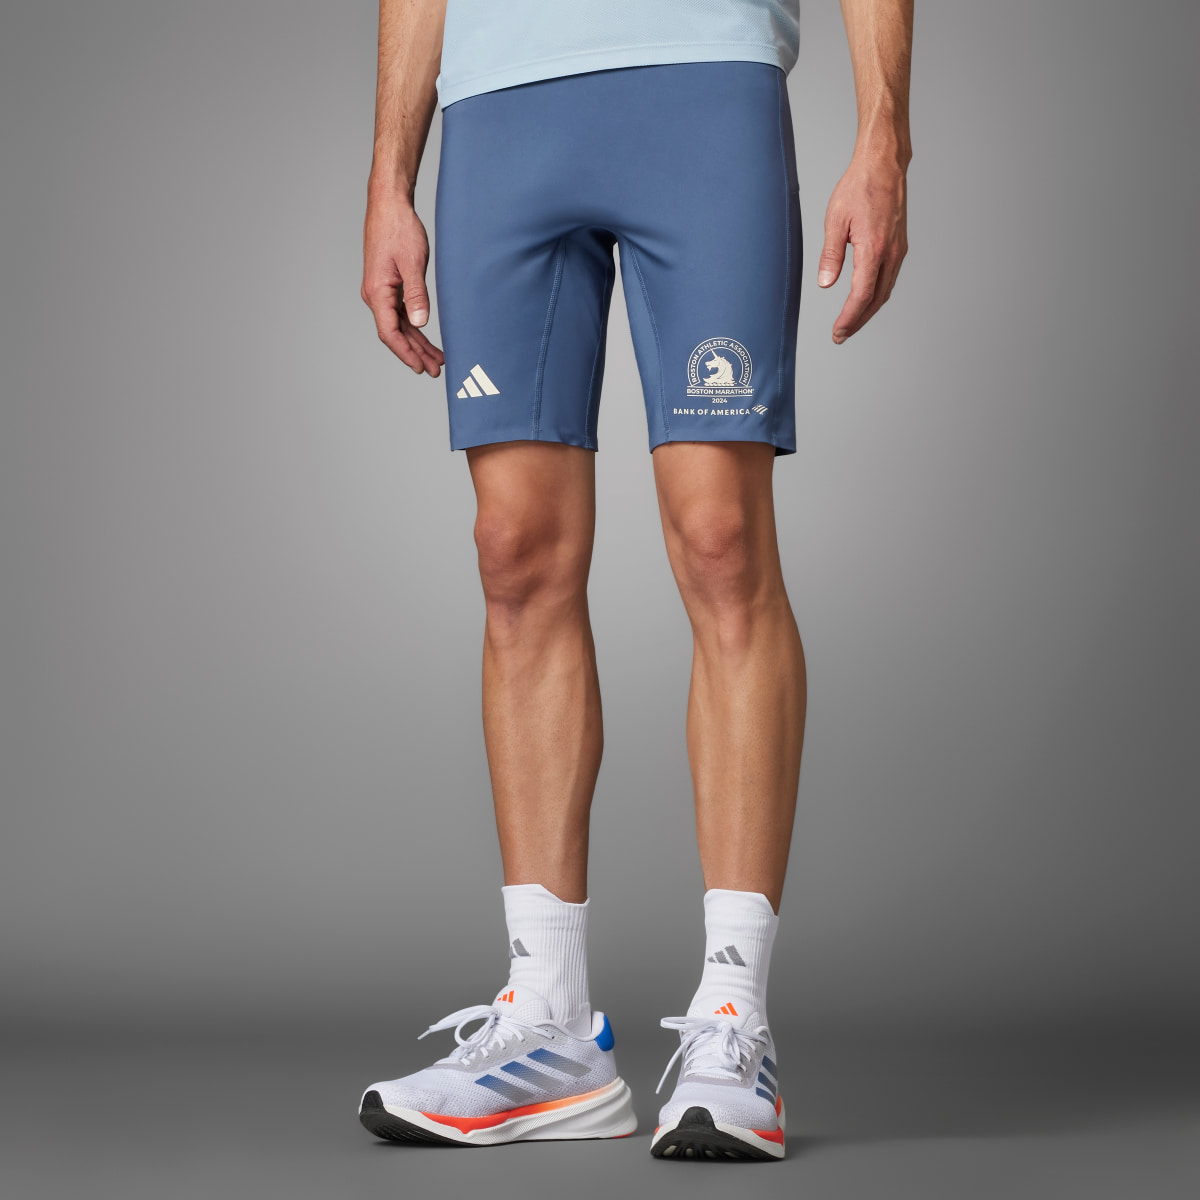 Adidas Boston Marathon 2024 Running Short Tights. 10